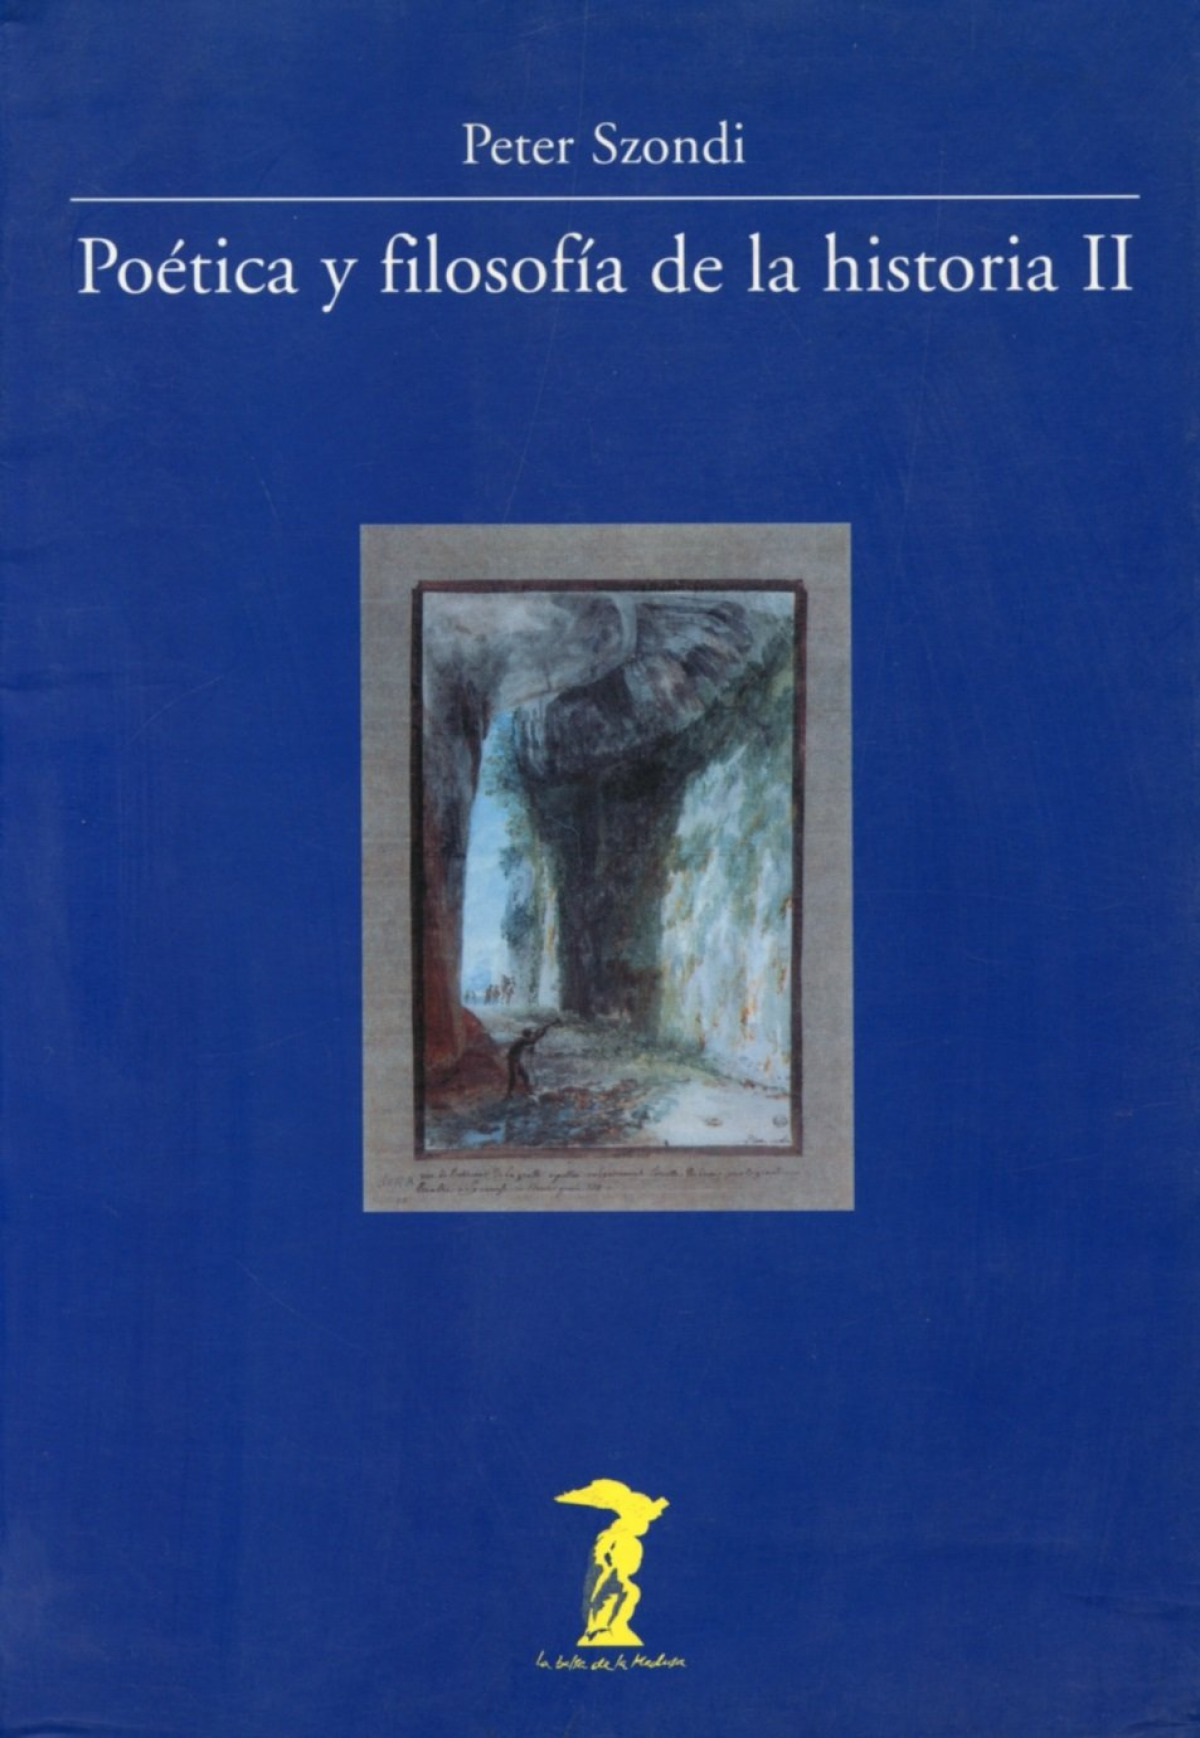 Poetica y filosofia, 2 - Szondi, Peter